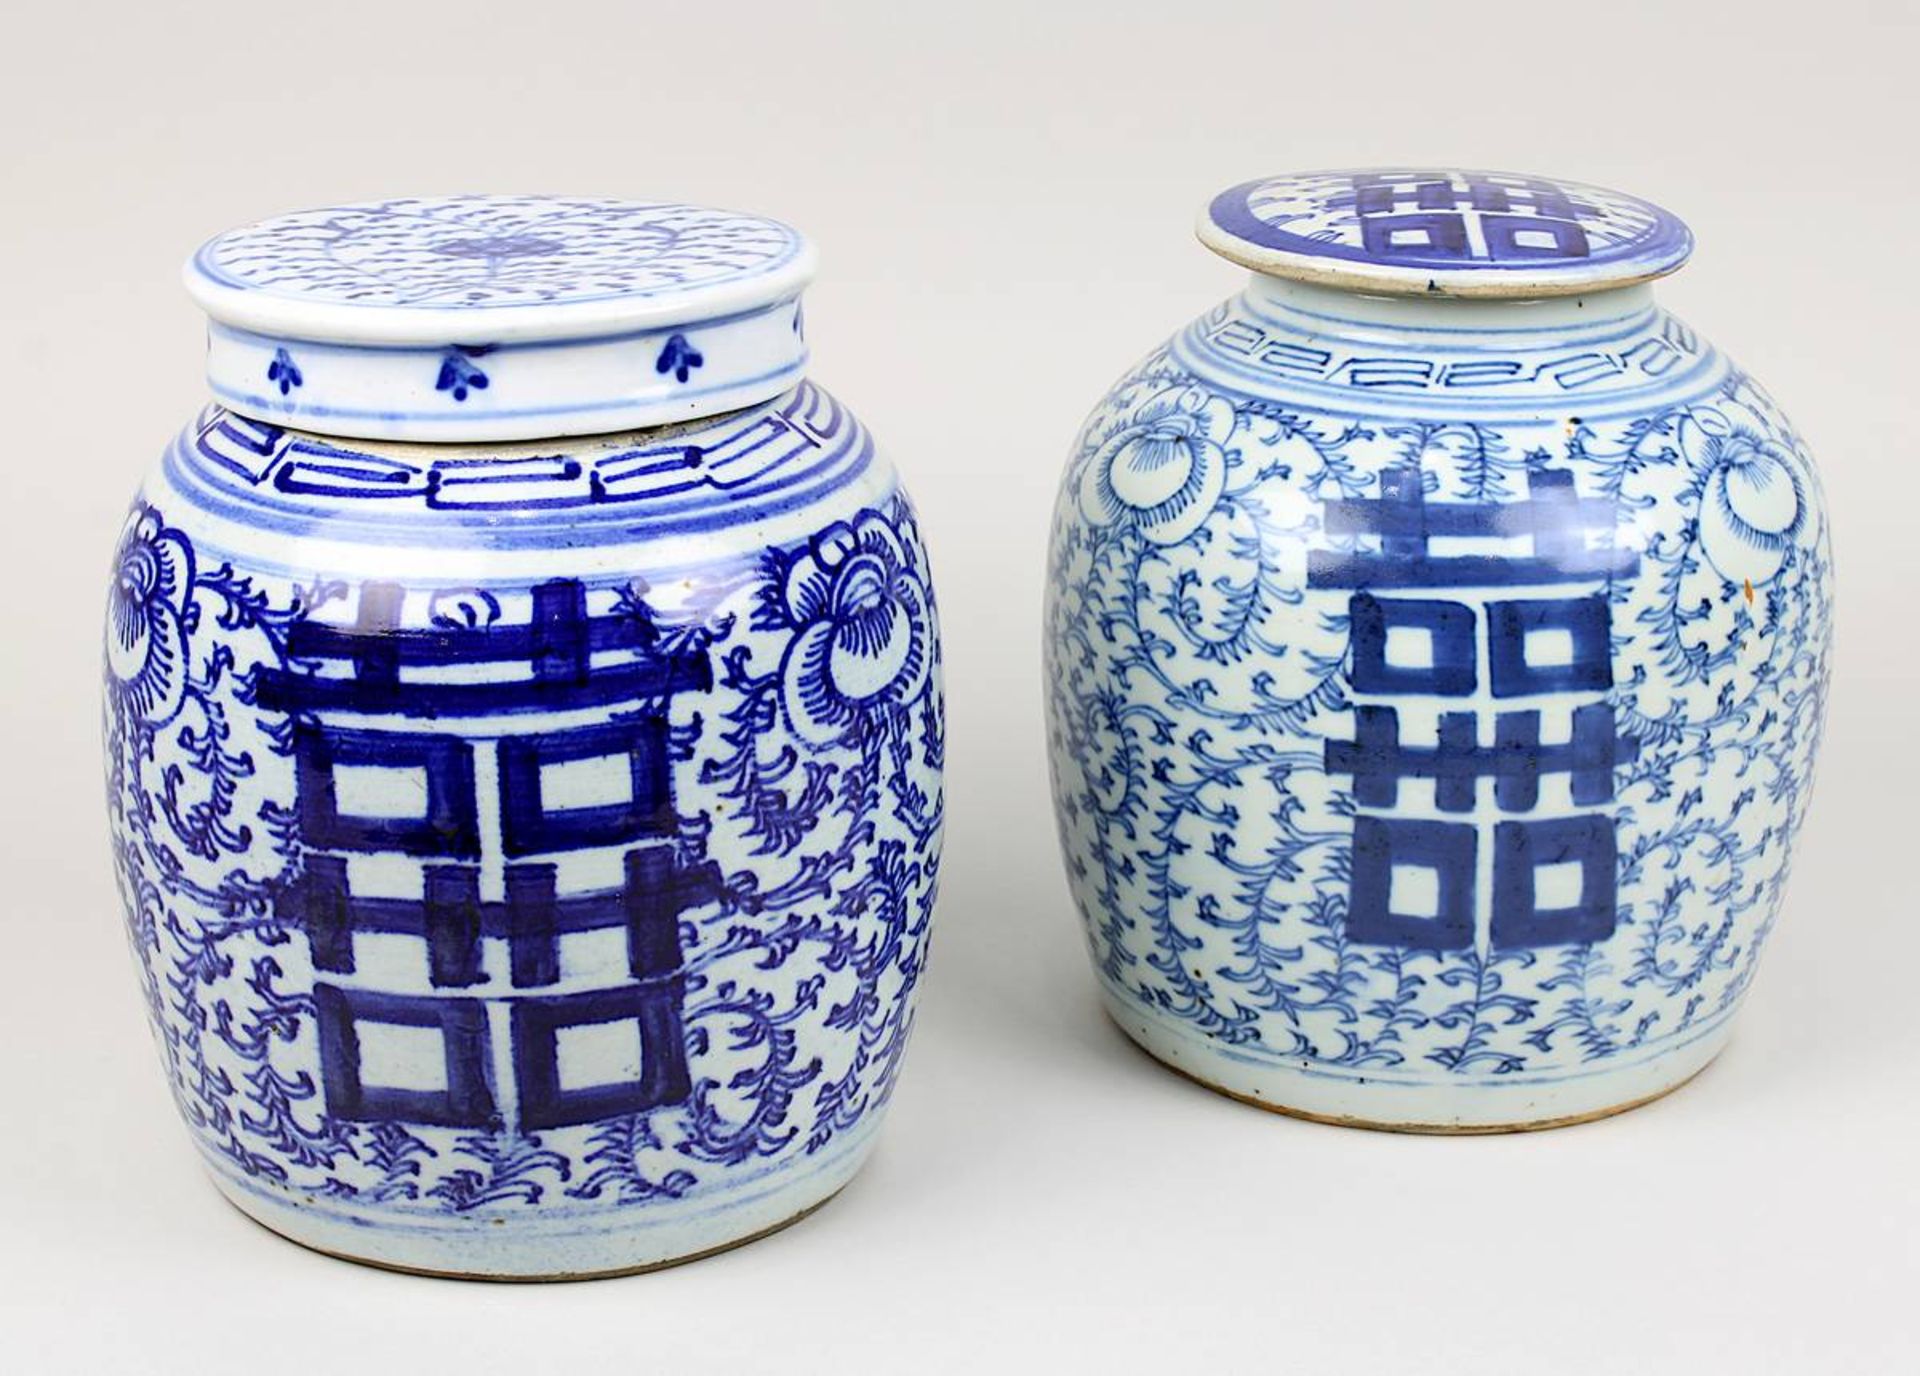 Zwei Ingwer-Schultertöpfe, China 19. Jh., Porzellan, heller Scherben, unter Glasur Blaumalerei von